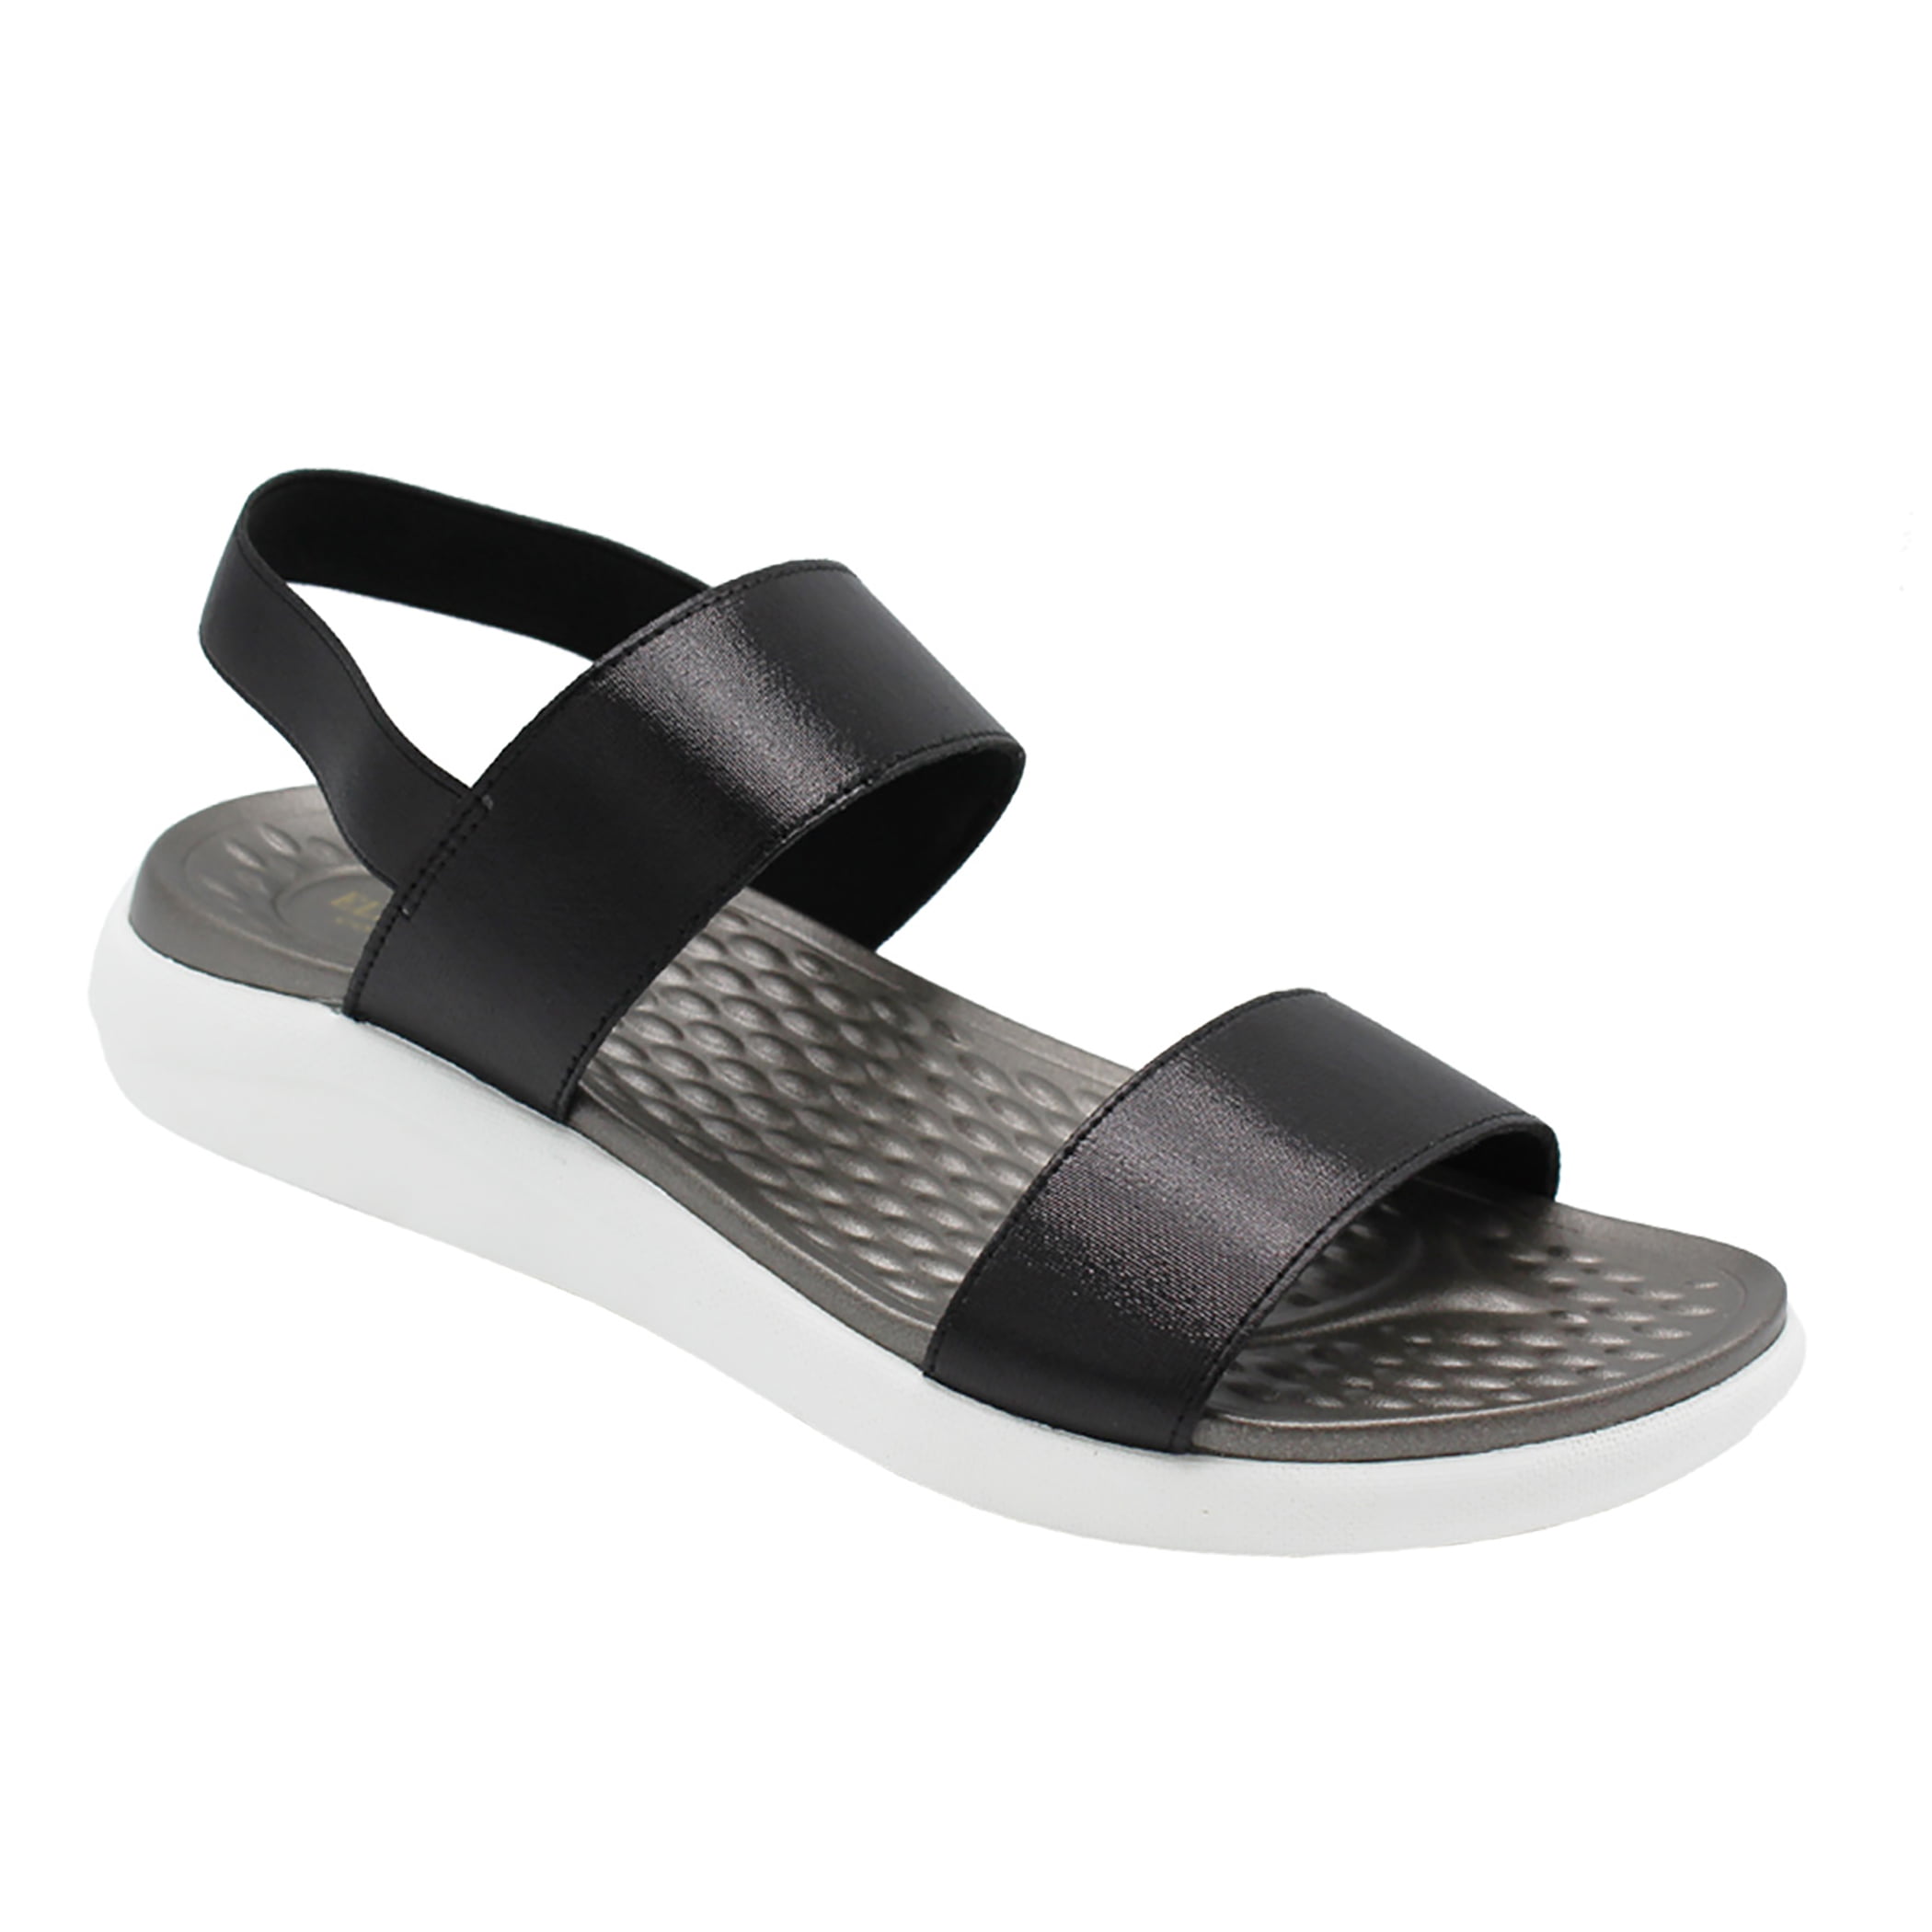 comfy strap sandals